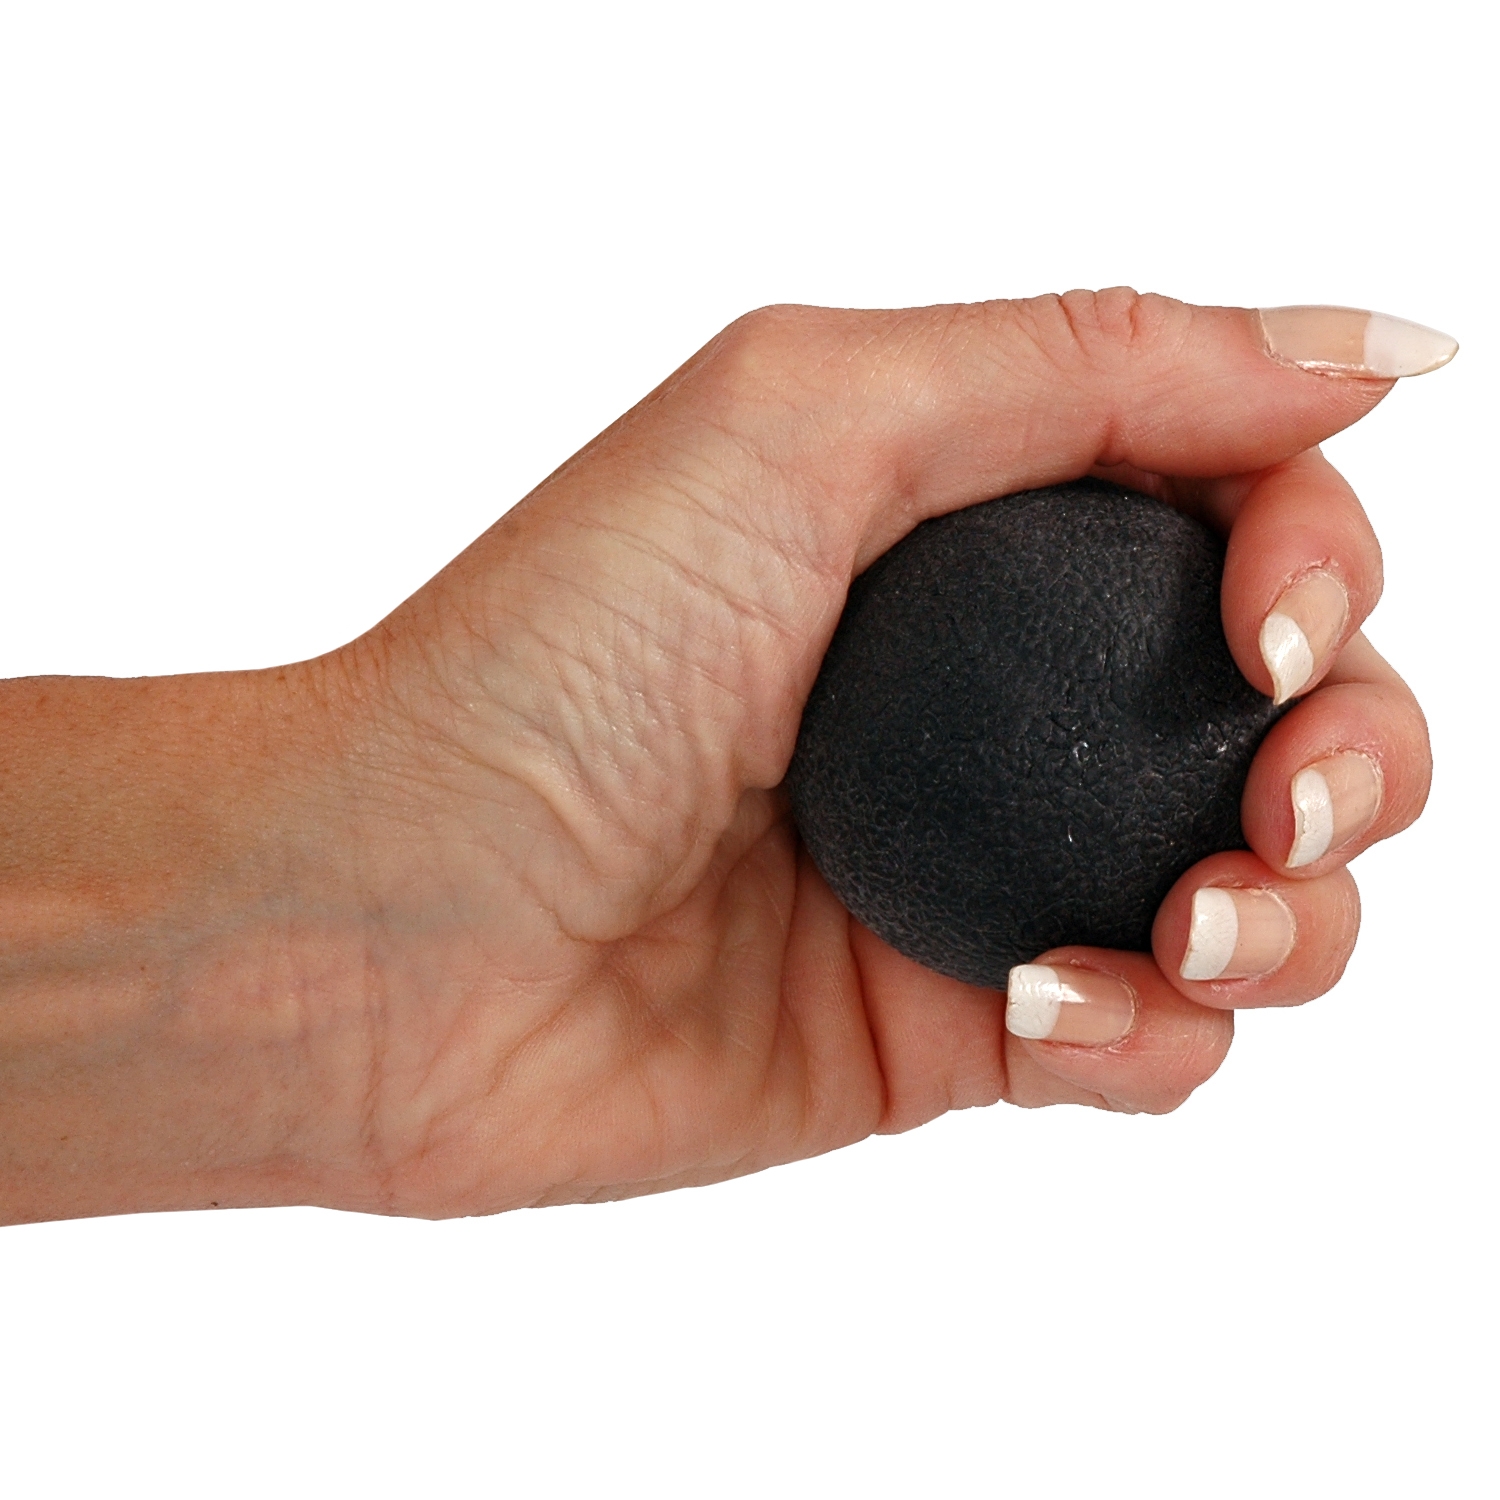 MoVeS handtrainingsbal eivormig - super sterk - zwart